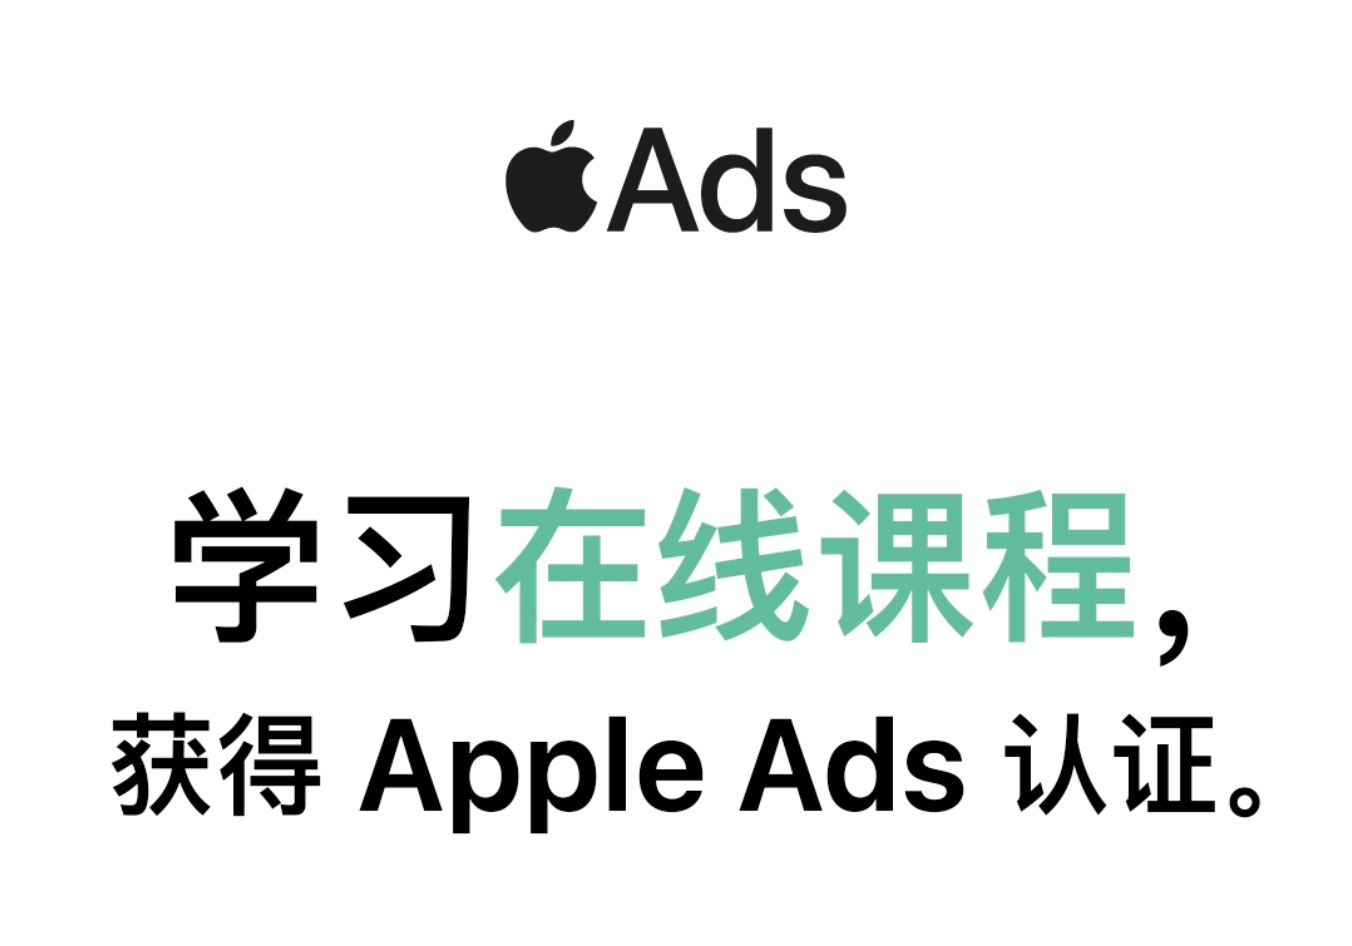 即刻探索 Apple Ads 认证课程。